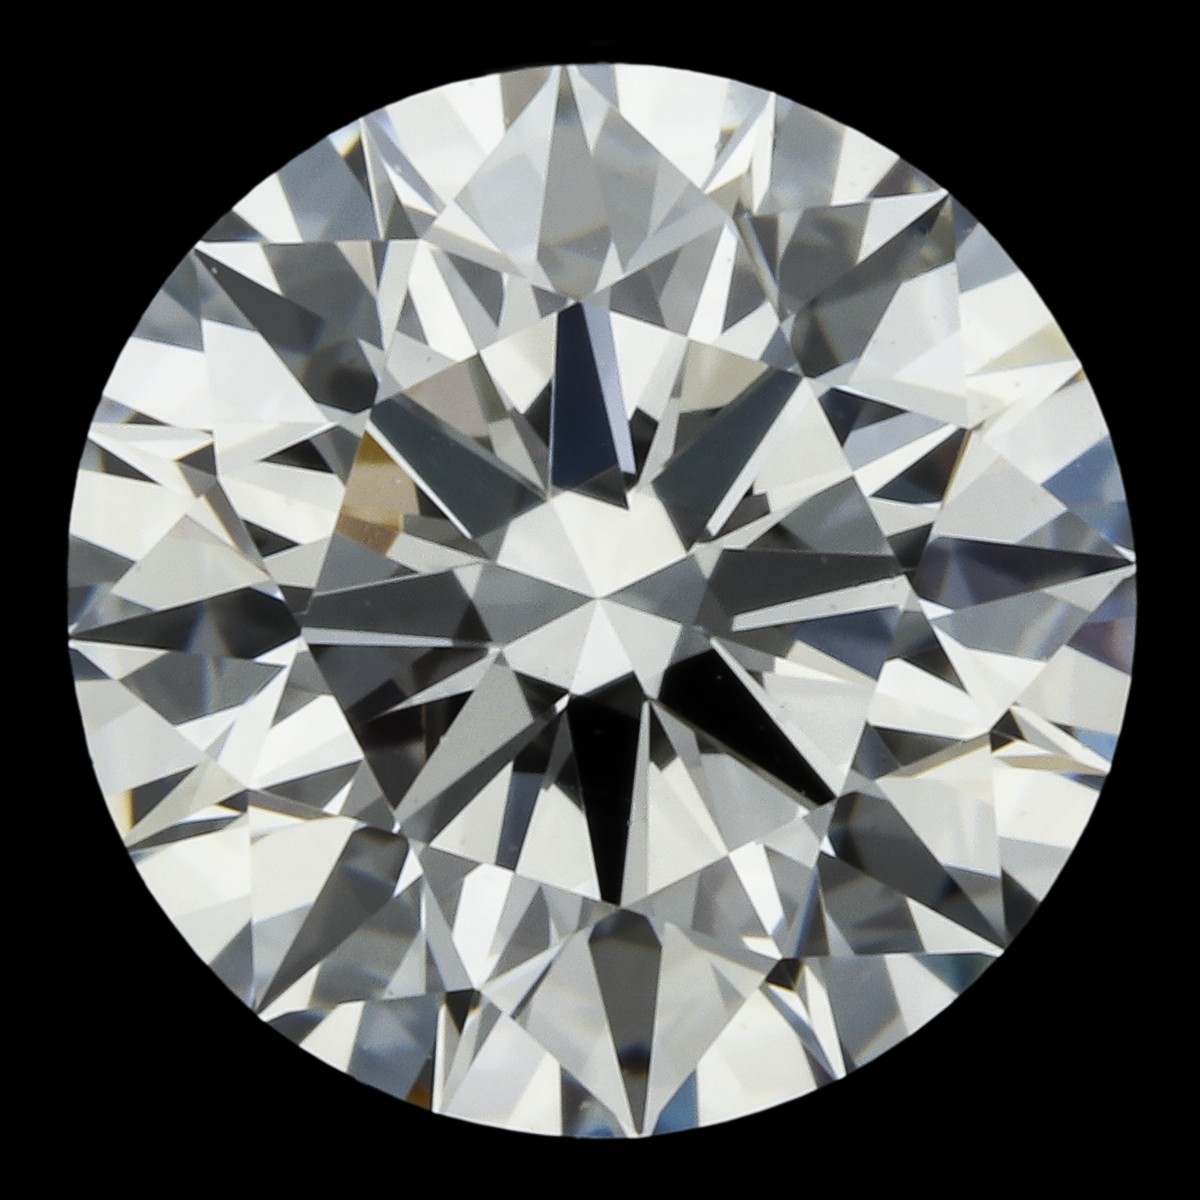 0.55 ct. IGI gecertificeerde natuurlijke diamant.